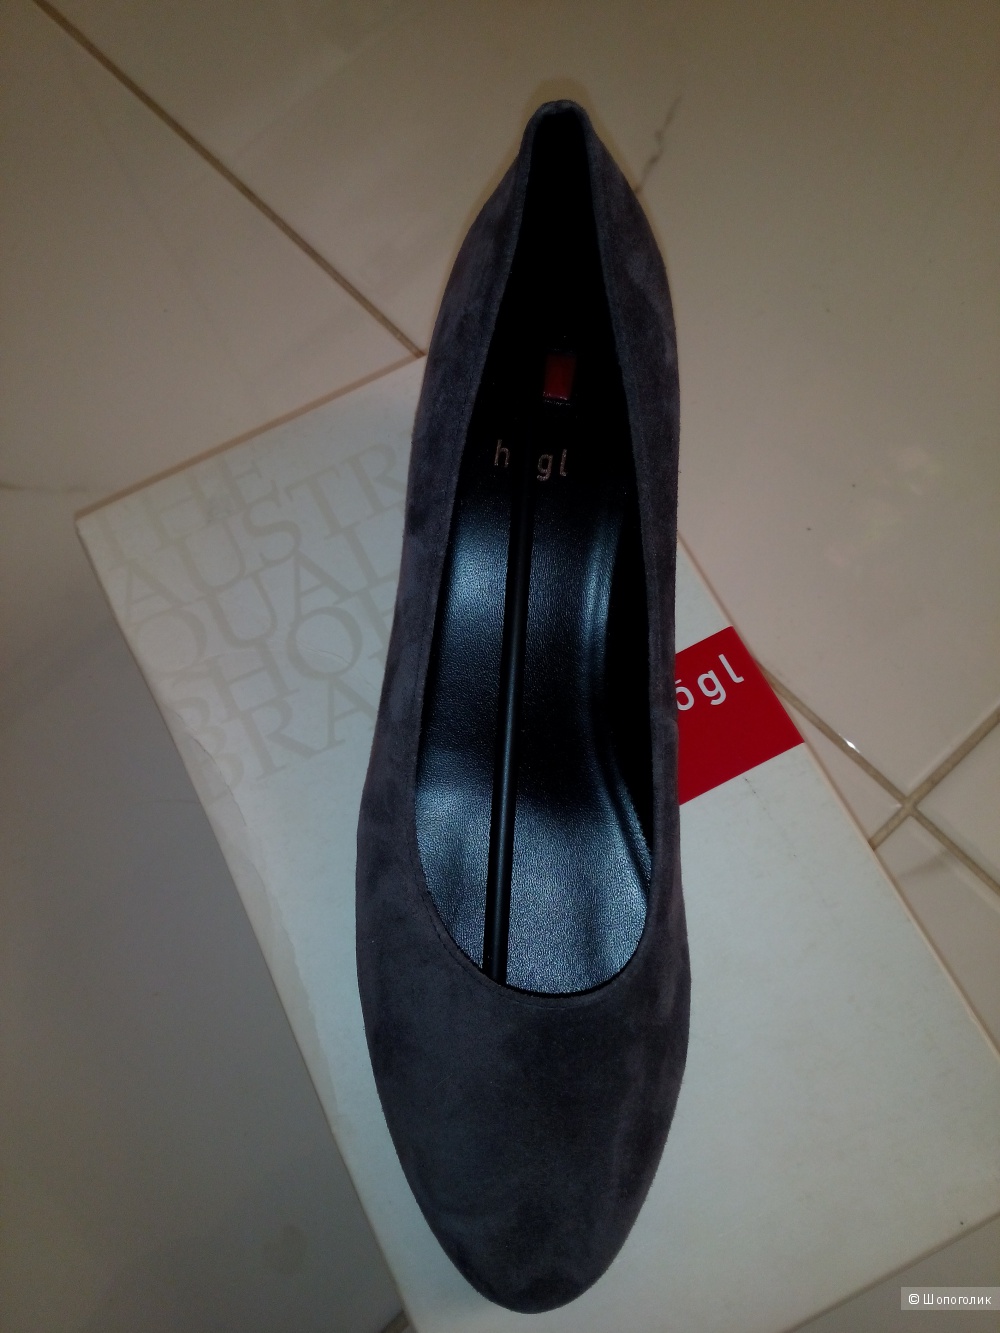 Новые туфли "HOGL" темно-серые  Размер 6 UK  39.5 россия